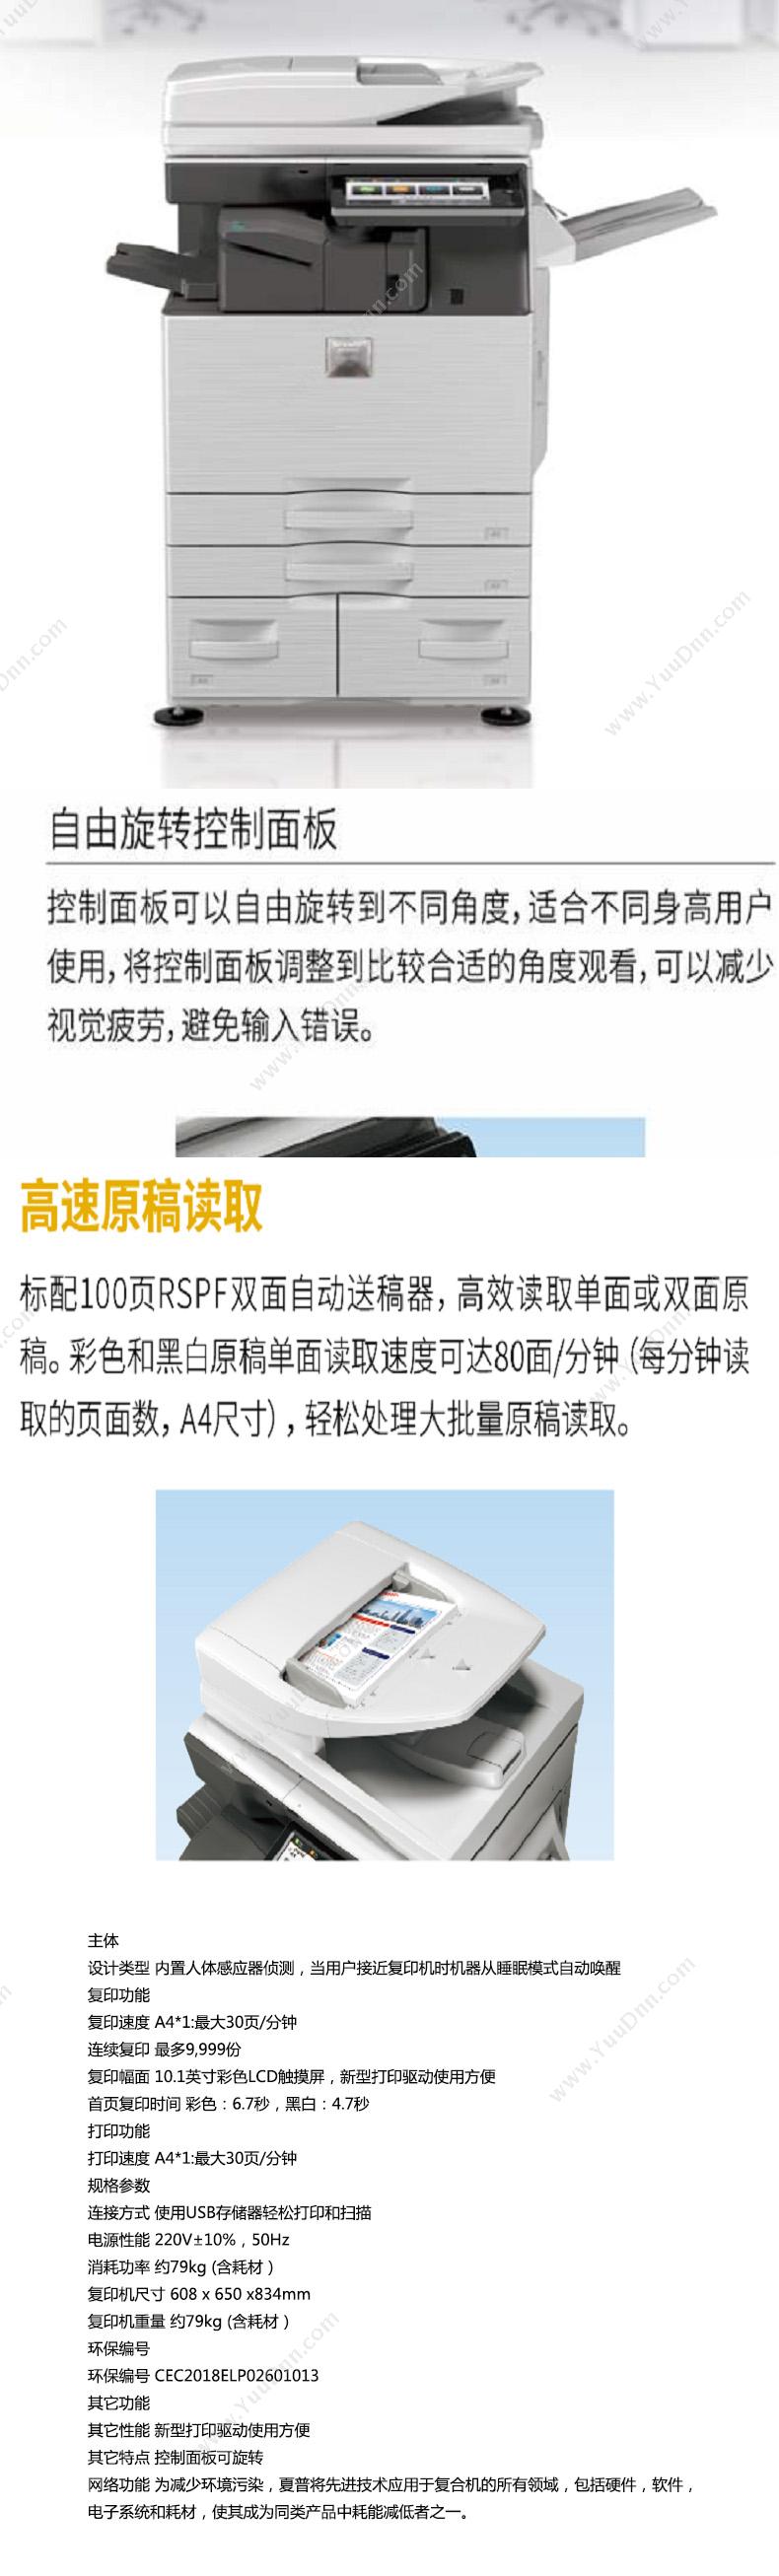 夏普 Sharp MX-C3081RV 复印机 A4彩色激光打印机